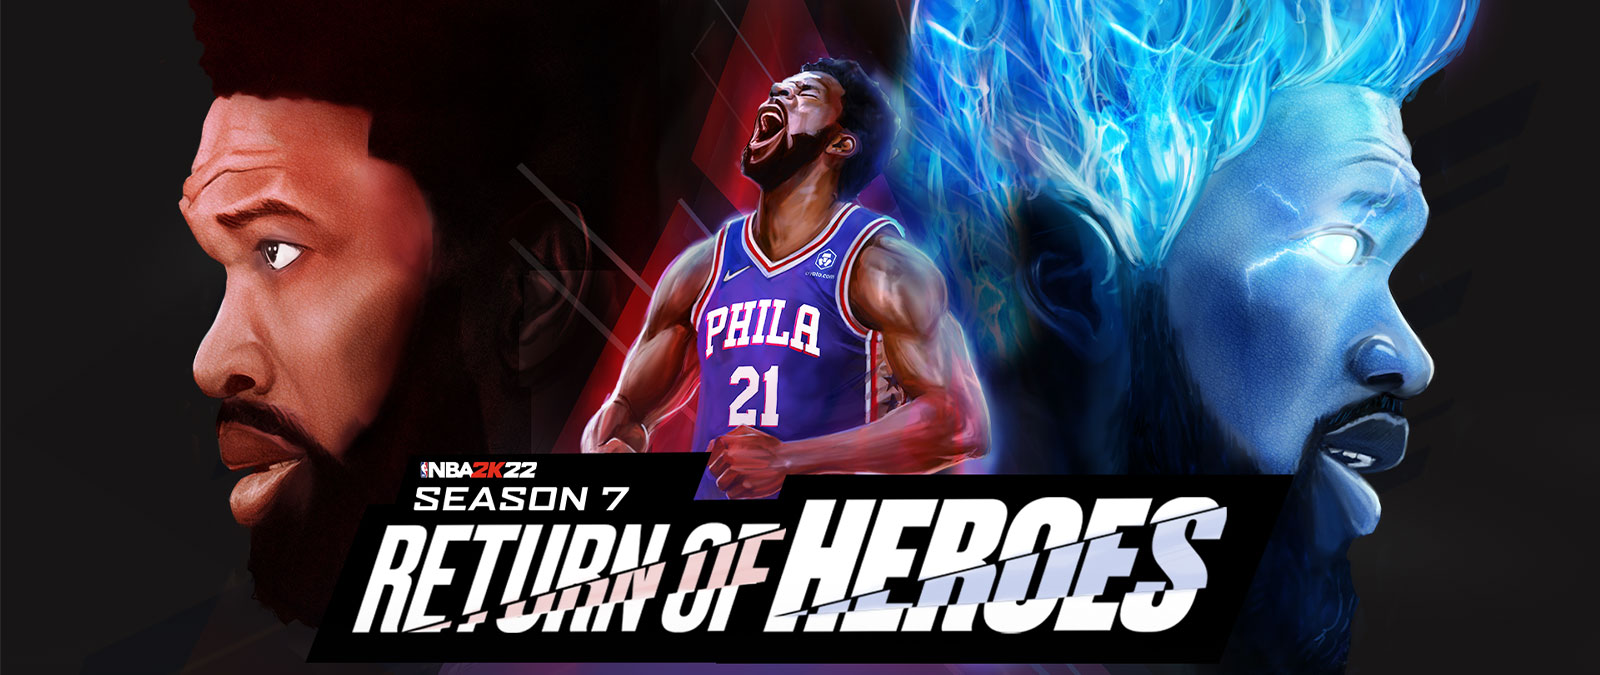 NBA 2K22, 7. évad, Return of Heroes, a Philadelphia egyik játékosa az ég felé kiált, és kék lángok közepette erőt gyűjt.